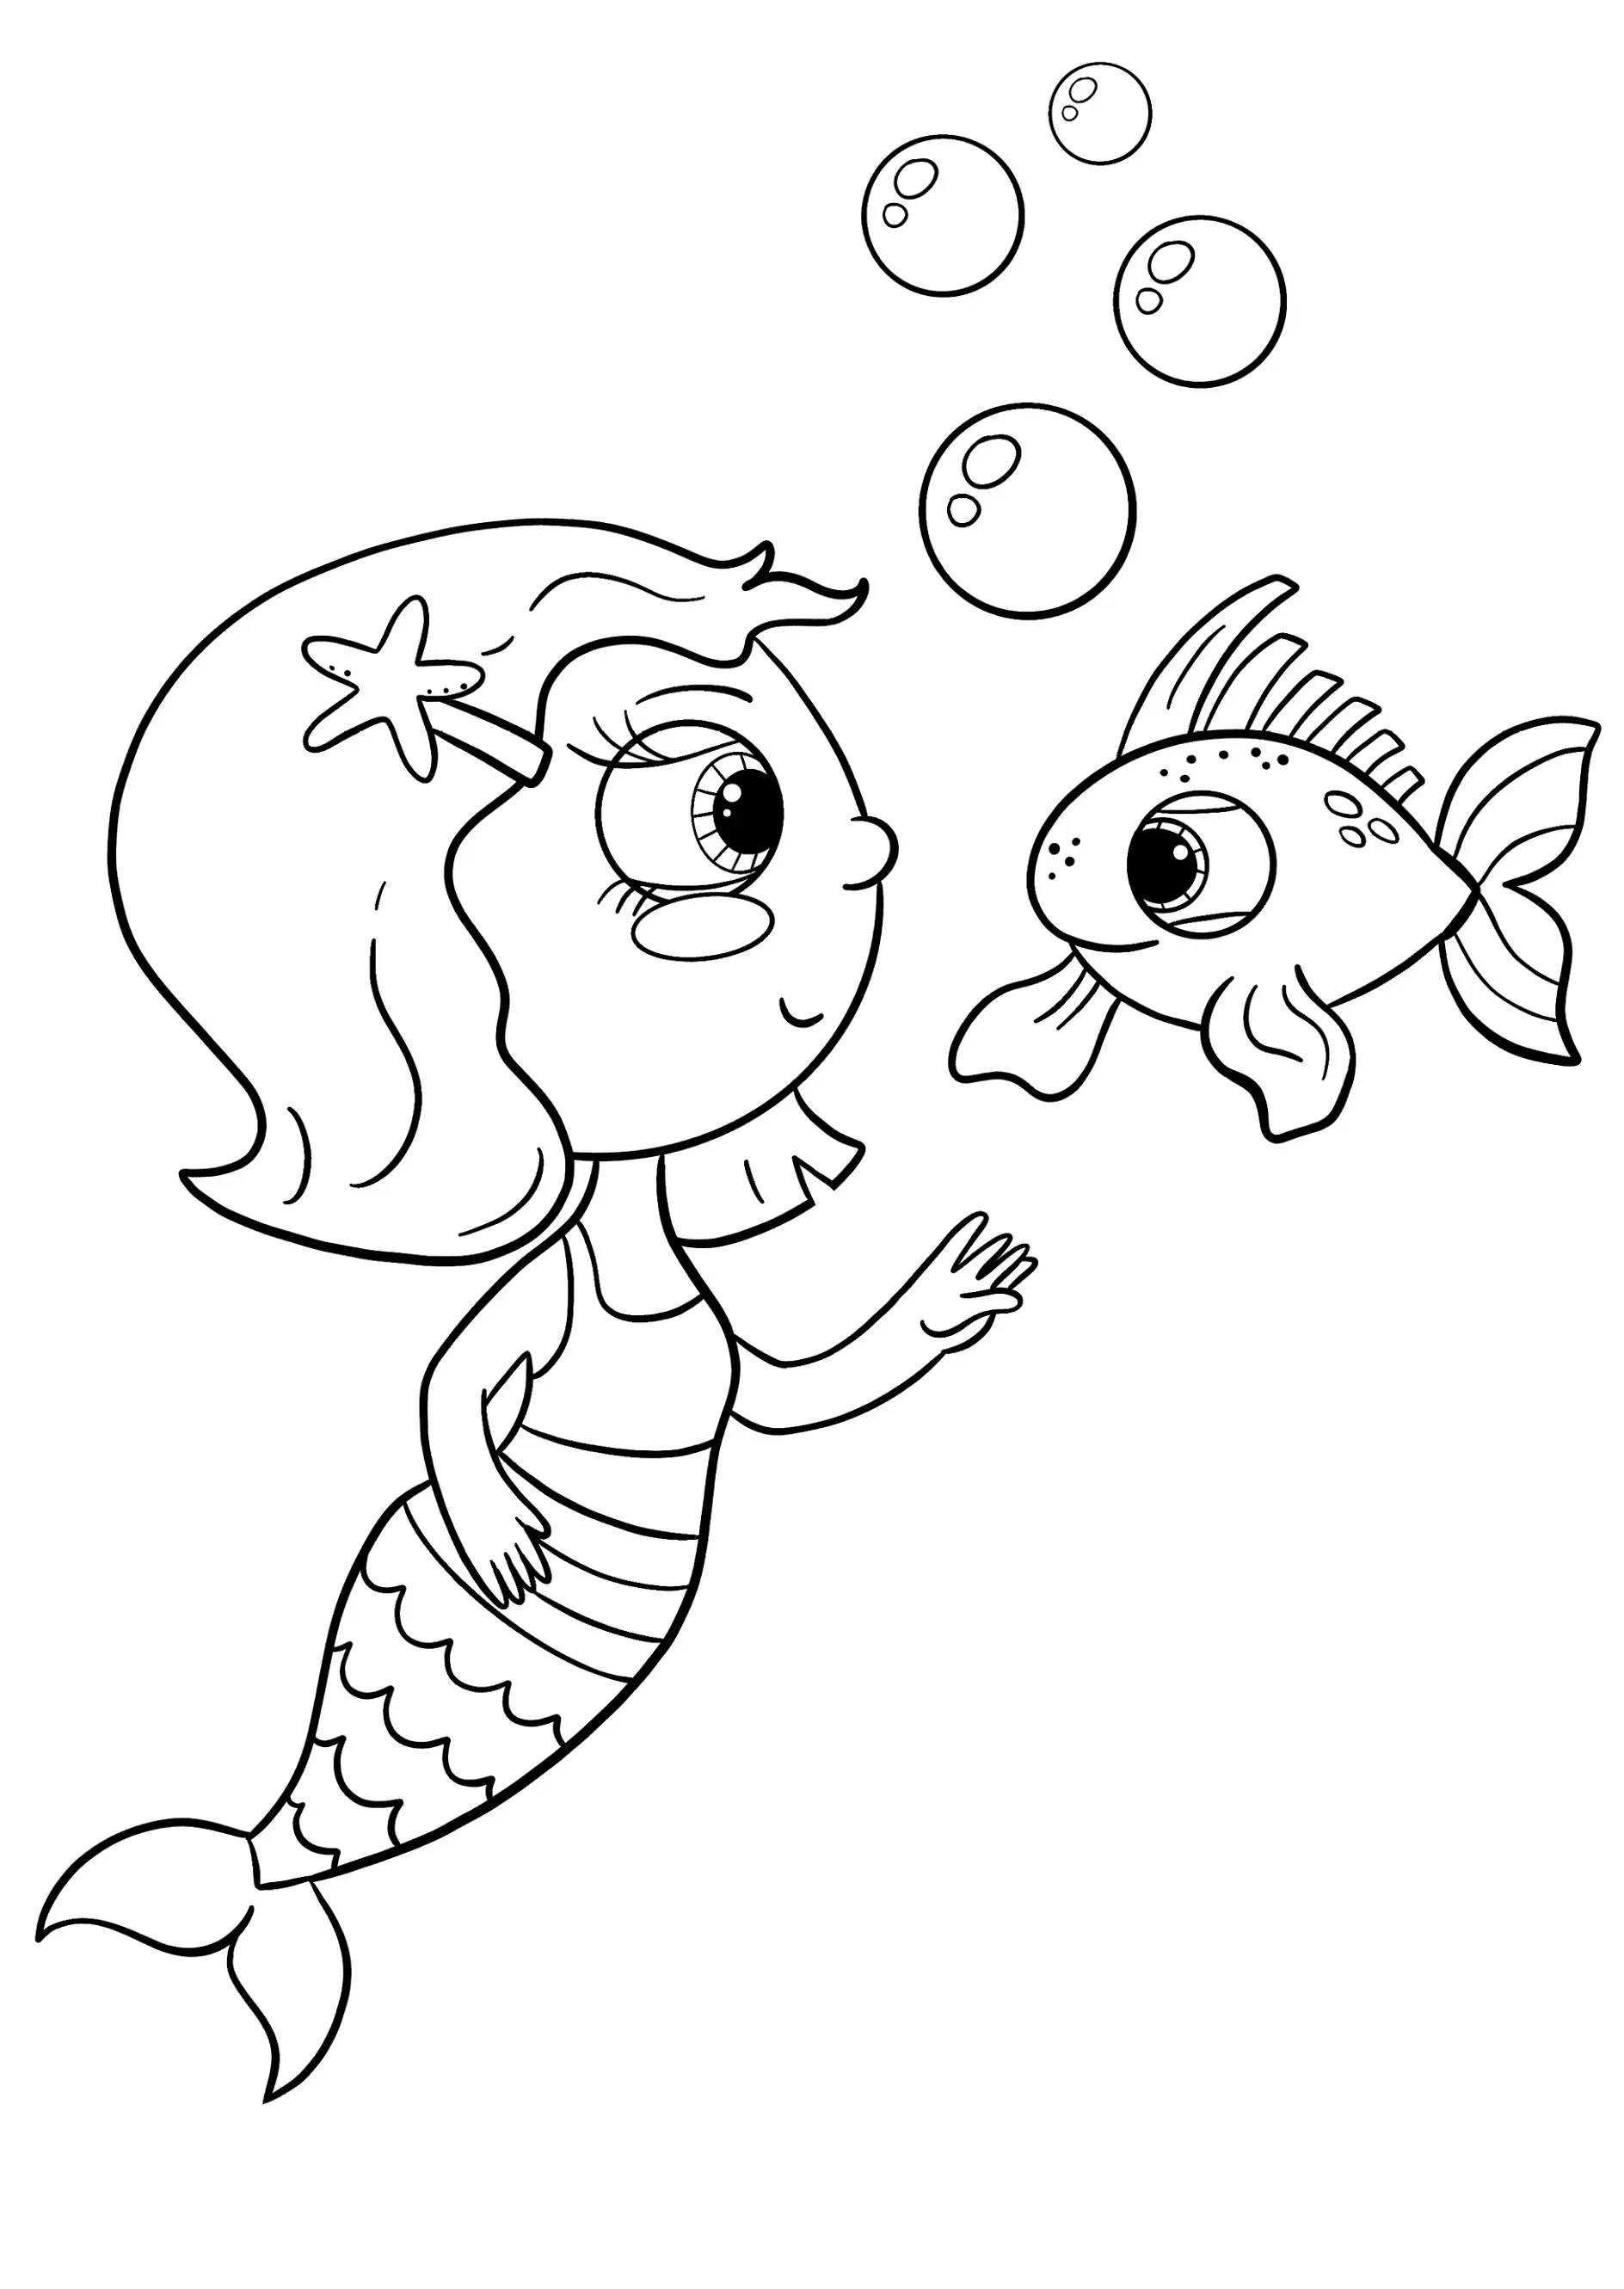 Ausmalbild Meerjungfrau mit Stern im Haar spielt mit Fisch